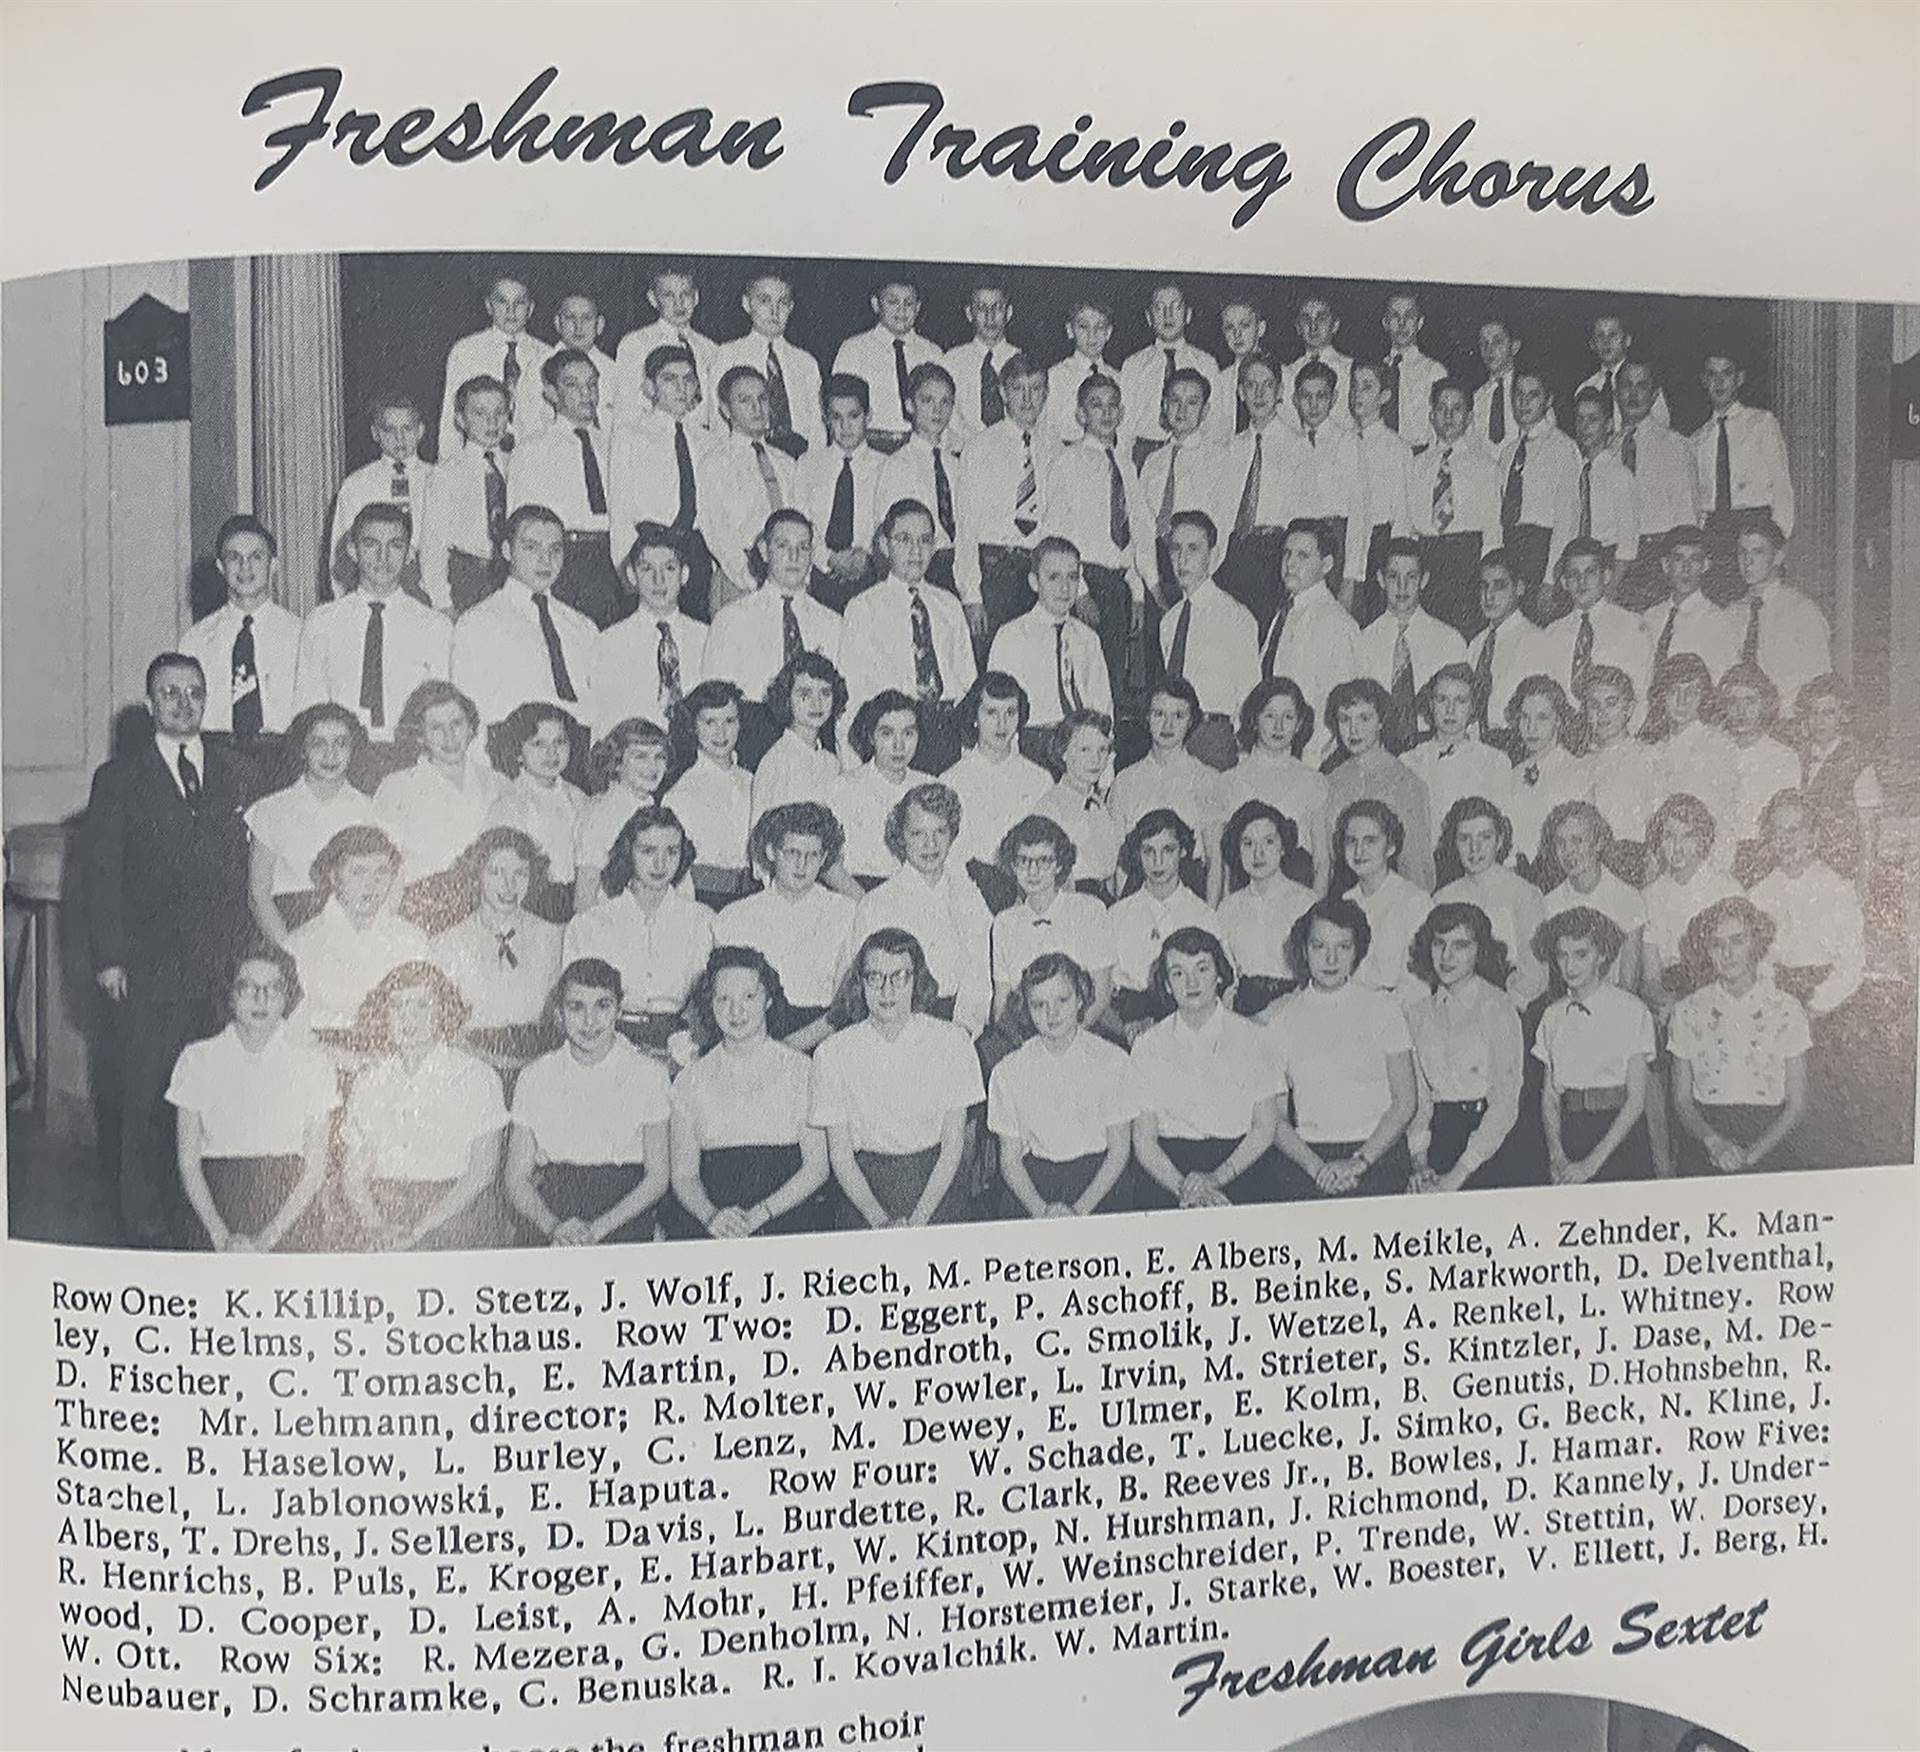 Freshman-Training-Chorus